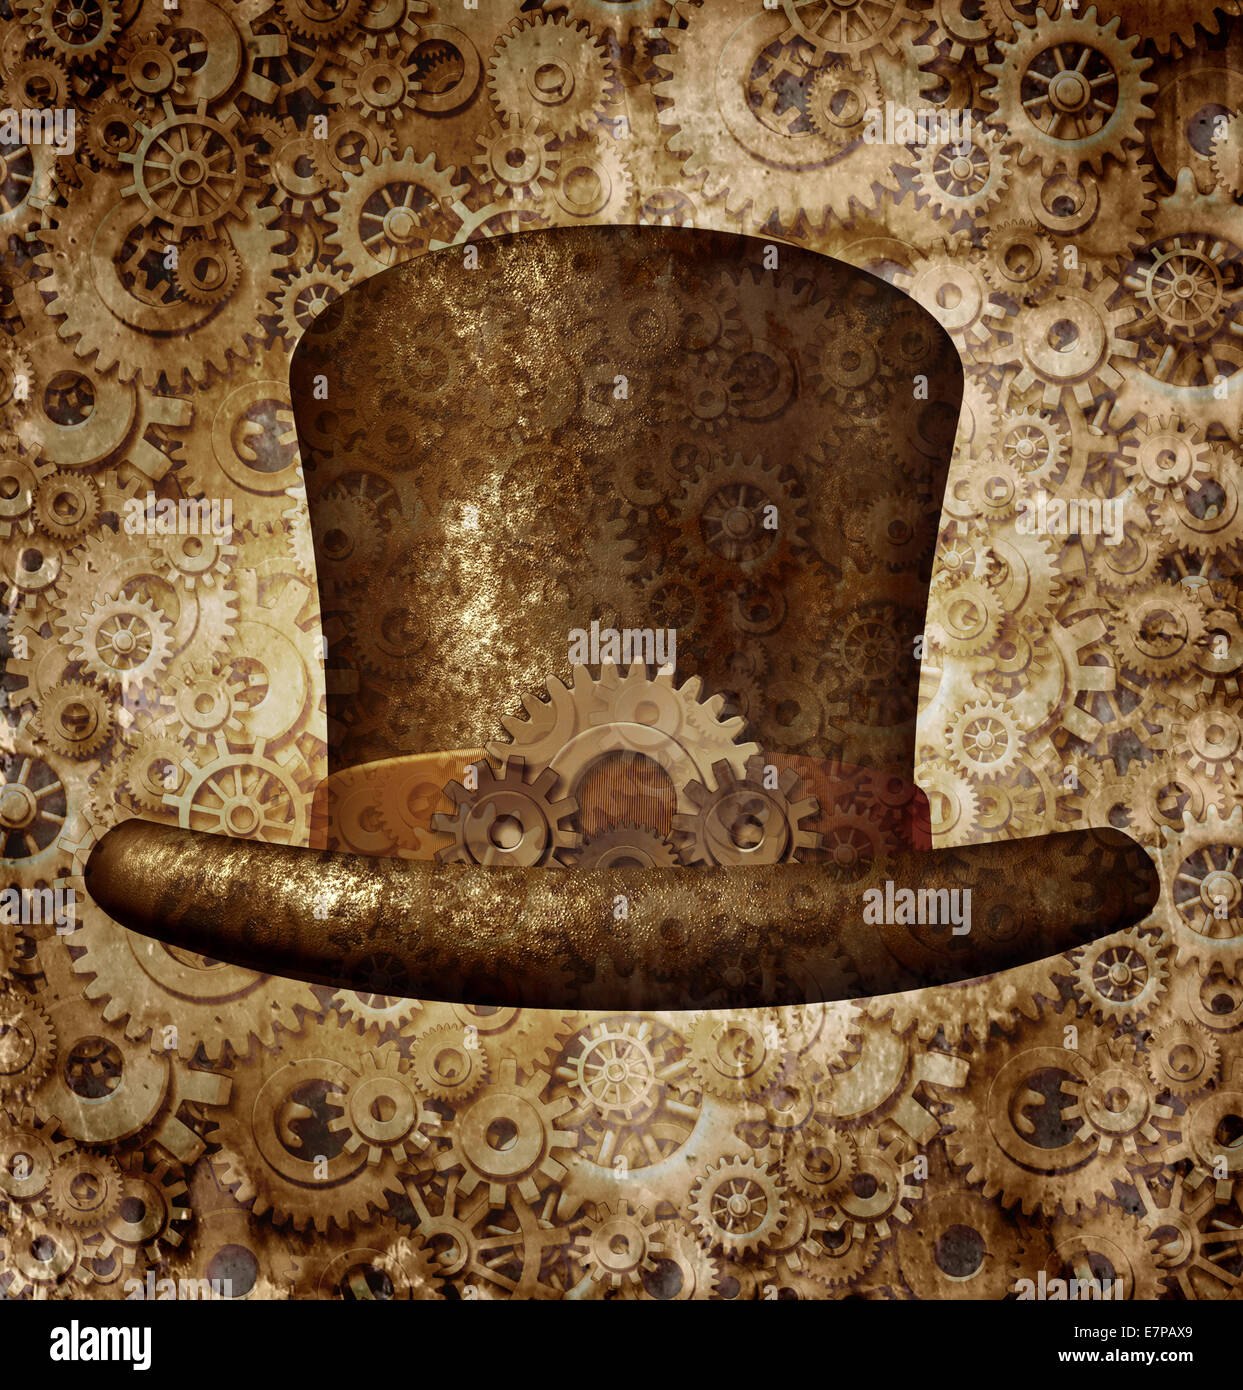 Steampunk top hat come fantascienza concetto realizzato in rame metallo ingranaggi e ruote dentate che indossa una storica vittoriana testa retrò accessorio come un simbolo della tecnologia della futuristica macchina fictional ibrido. Foto Stock